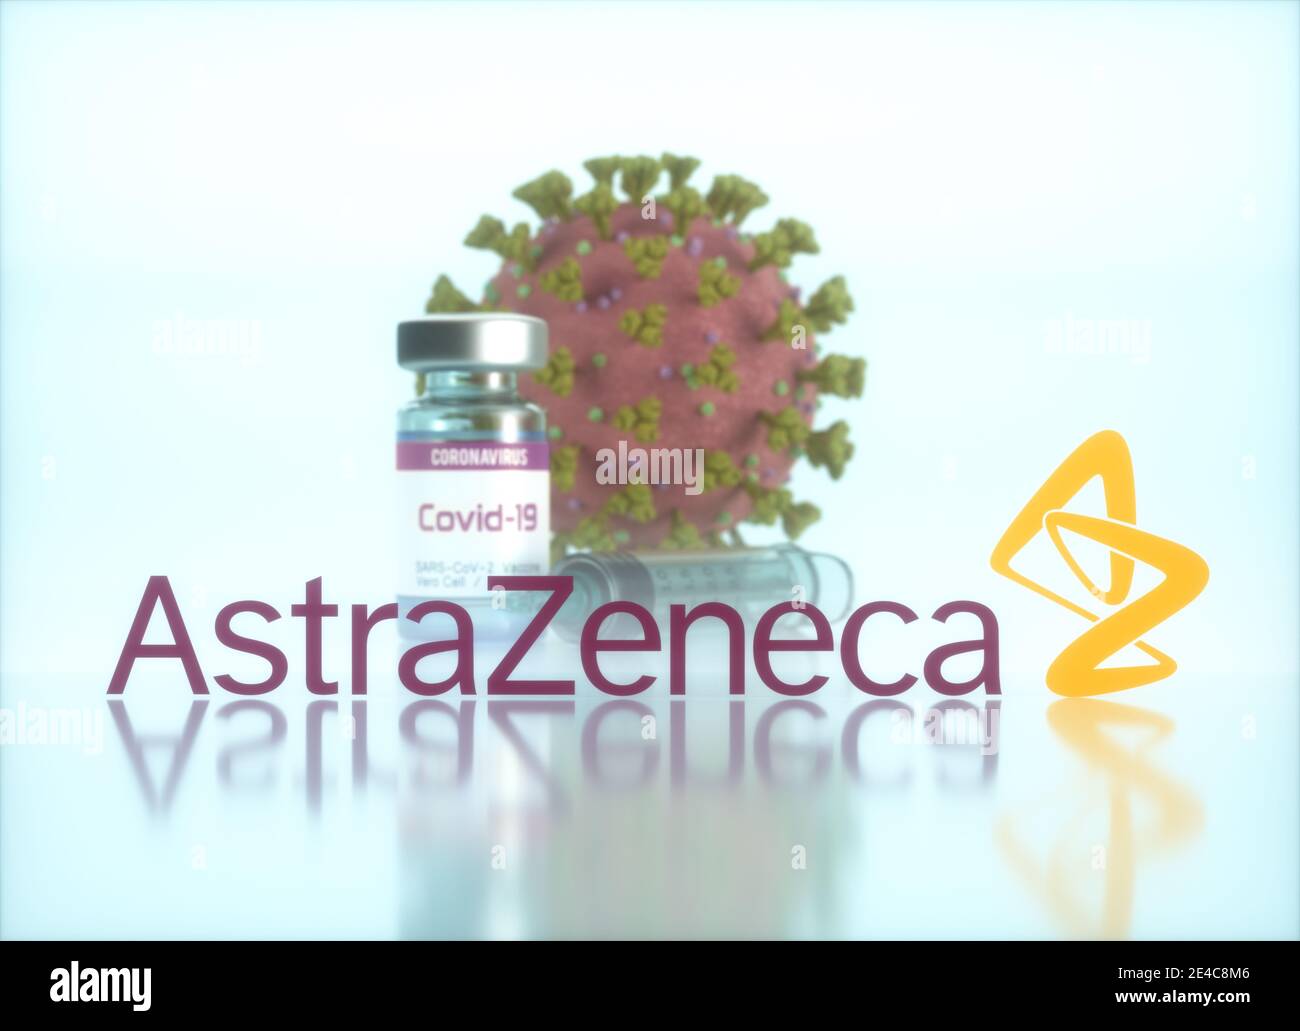 AstraZeneca Vaccine, image conceptuelle pour la découverte d'un vaccin contre le Covid-19, le coronavirus, le 2019-nCoV, le COV-SRAS-2. Illustration 3D. Banque D'Images